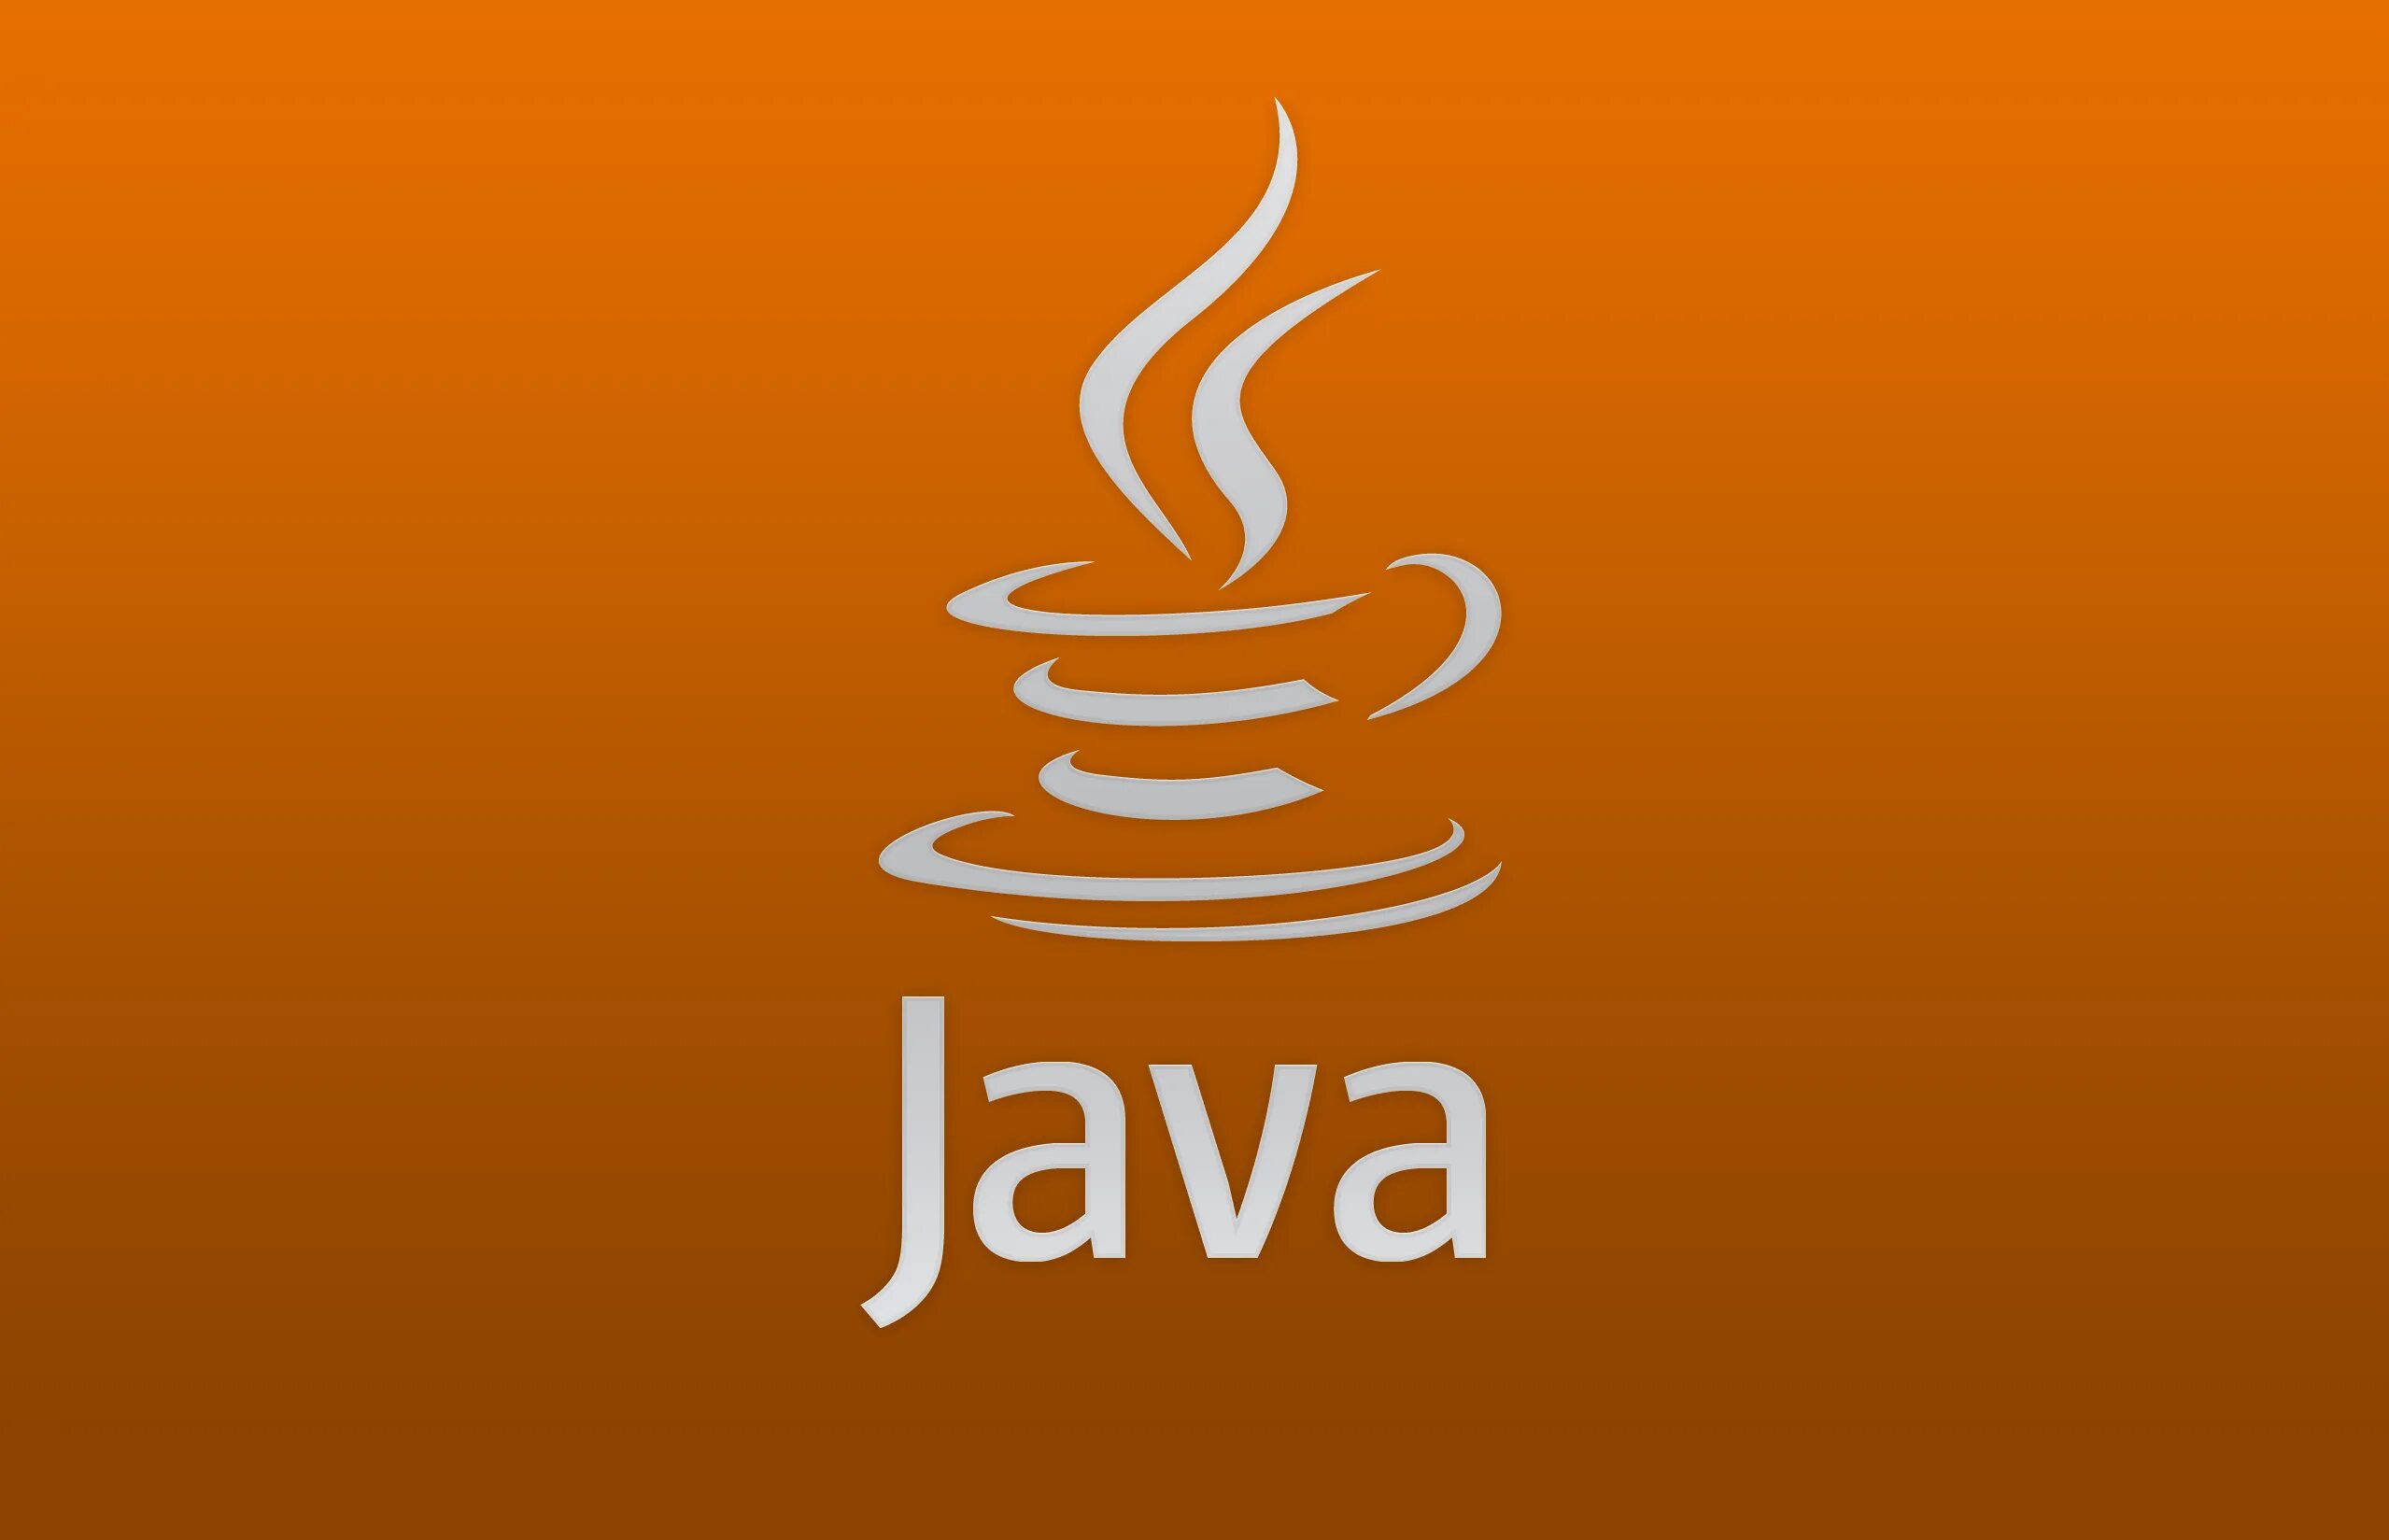 Item java. Язык программирования java. Java логотип. Иконка java. Логотип джава.